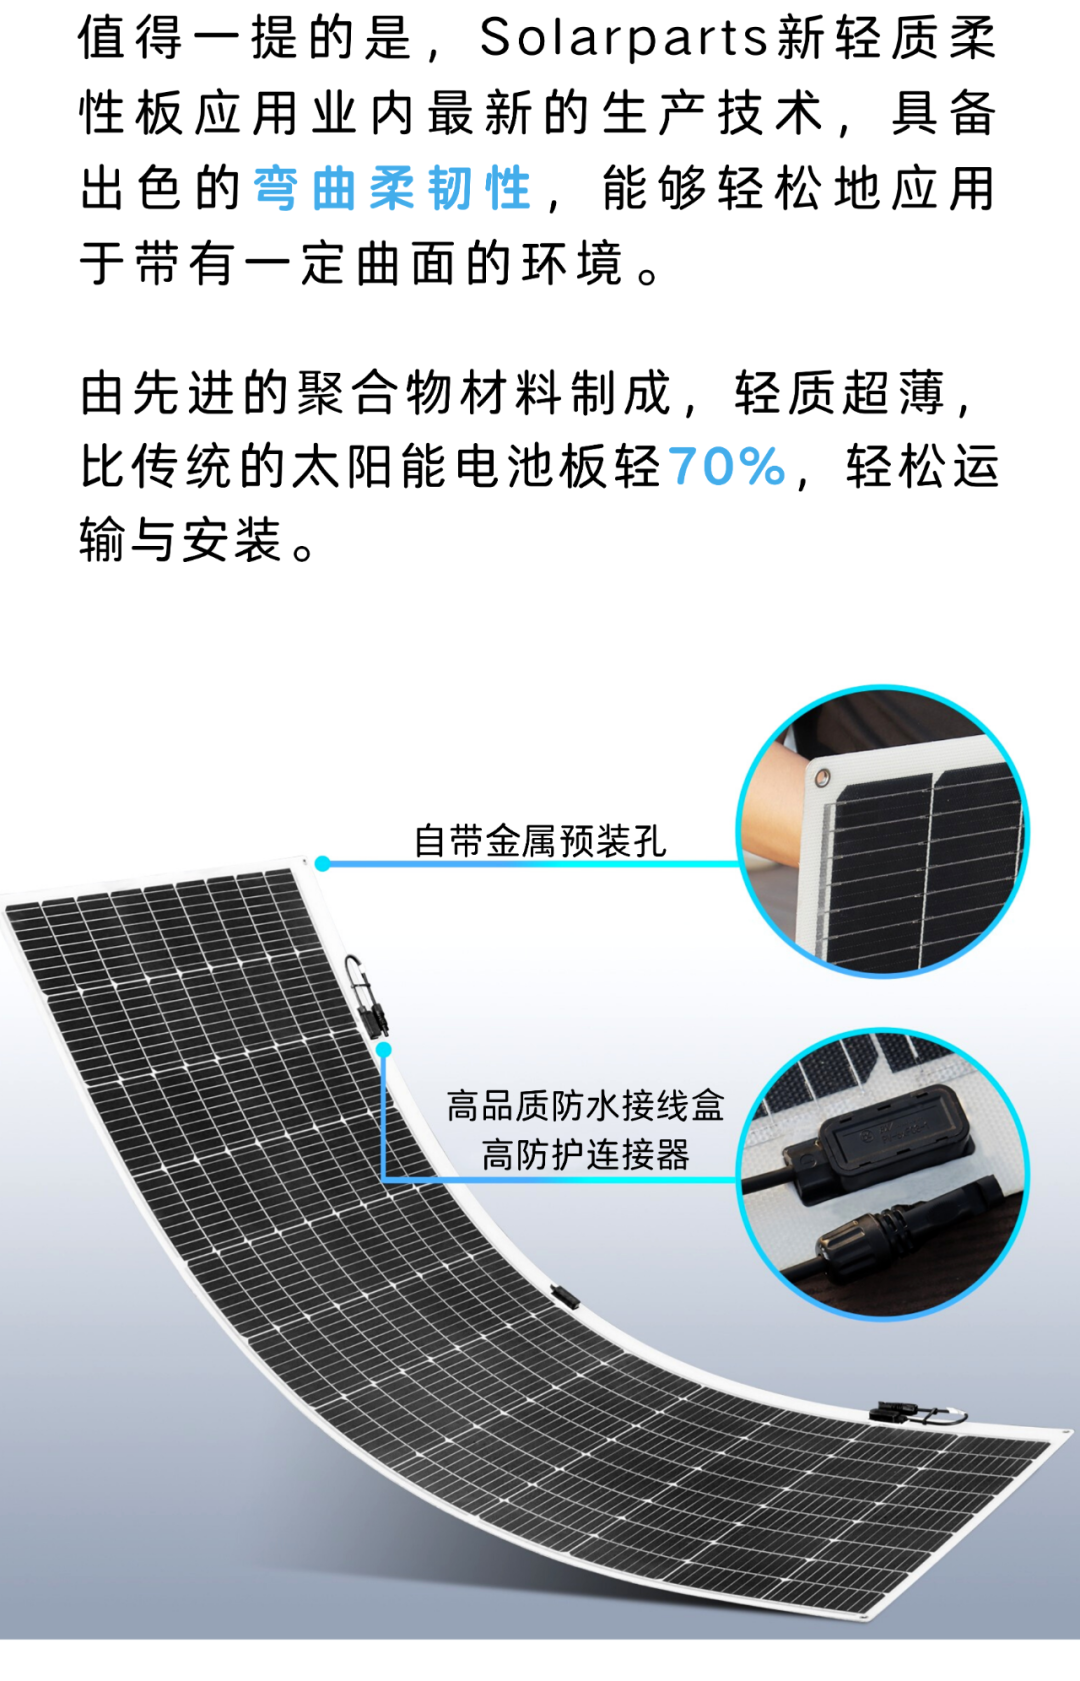 为什么柔性太阳能板要采用ETFE膜材？